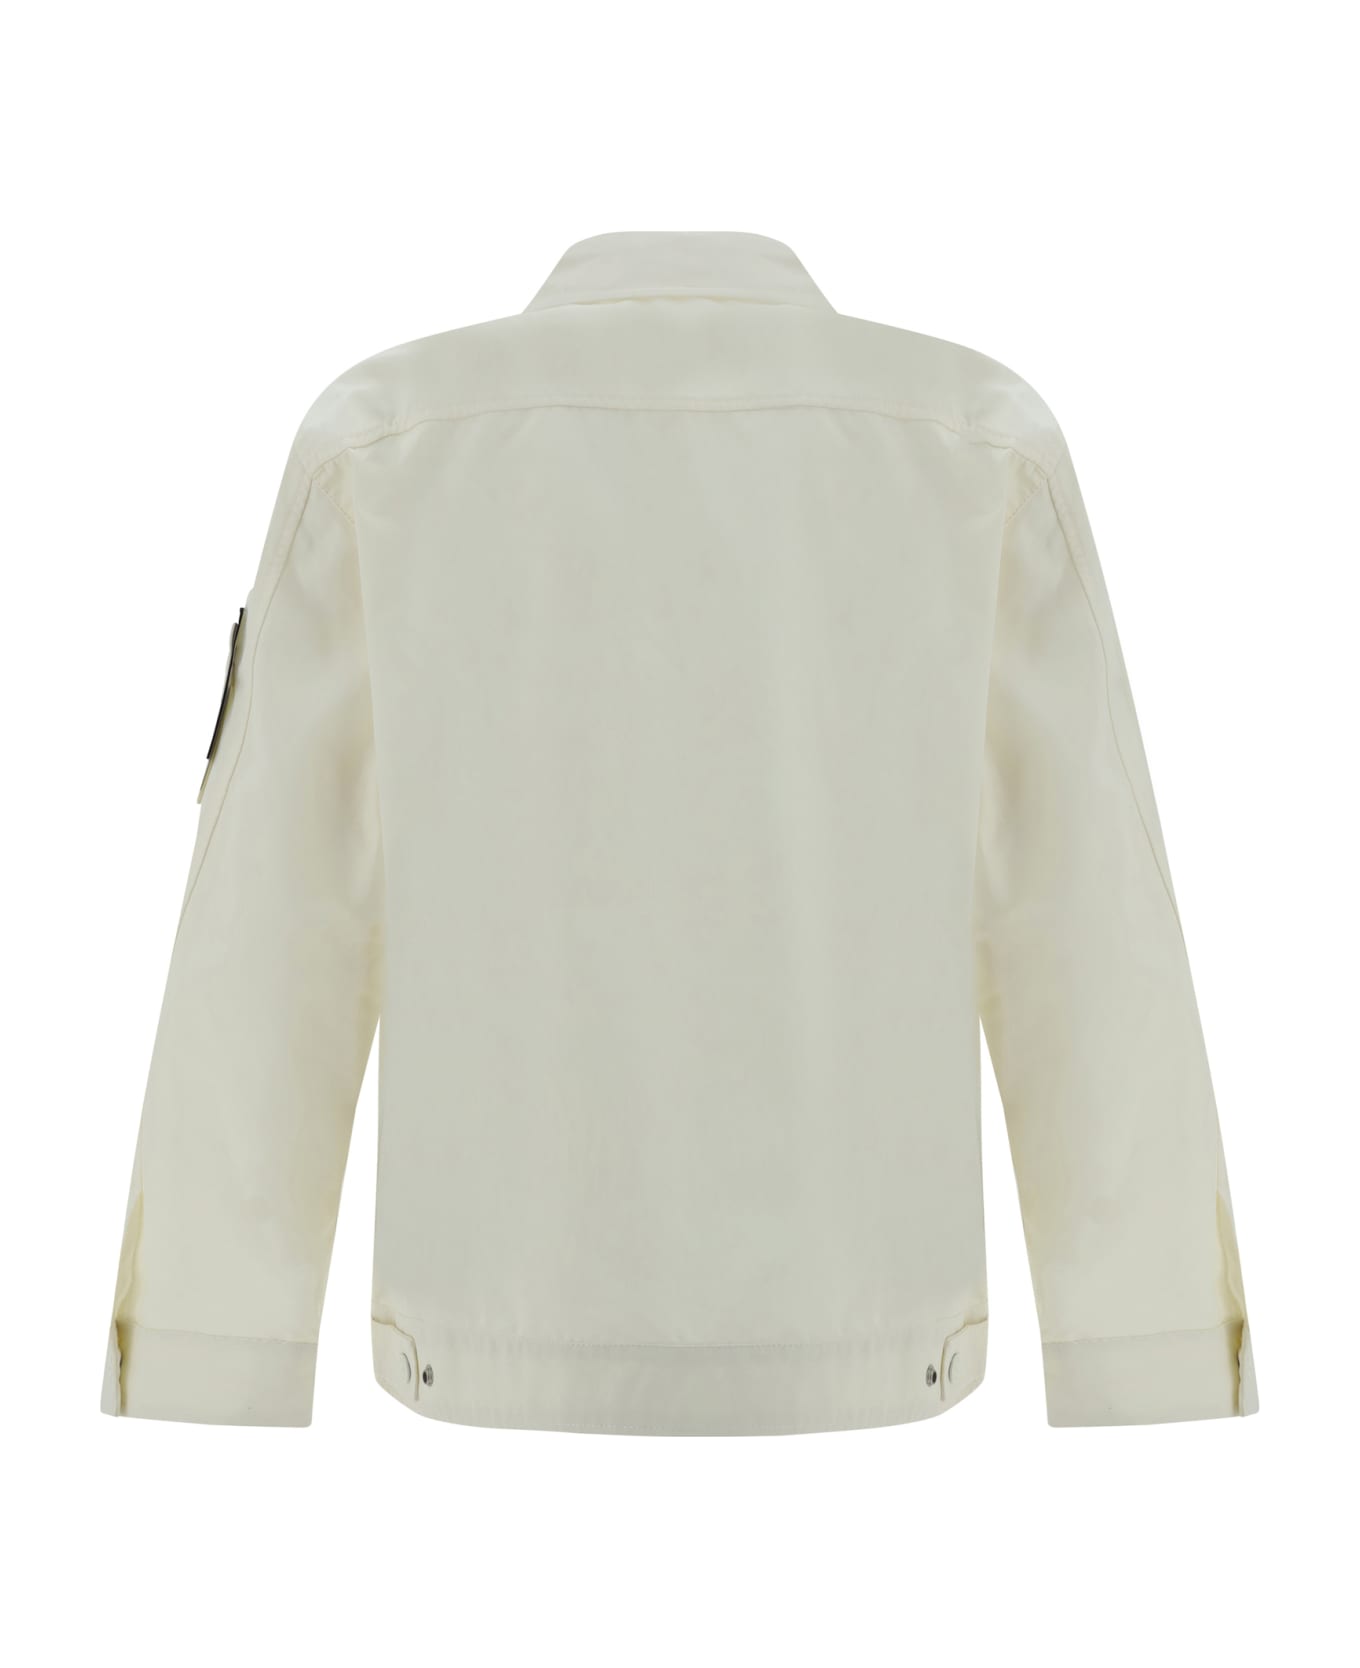 Stone Island Zippered Cotton Jacket - Ivory